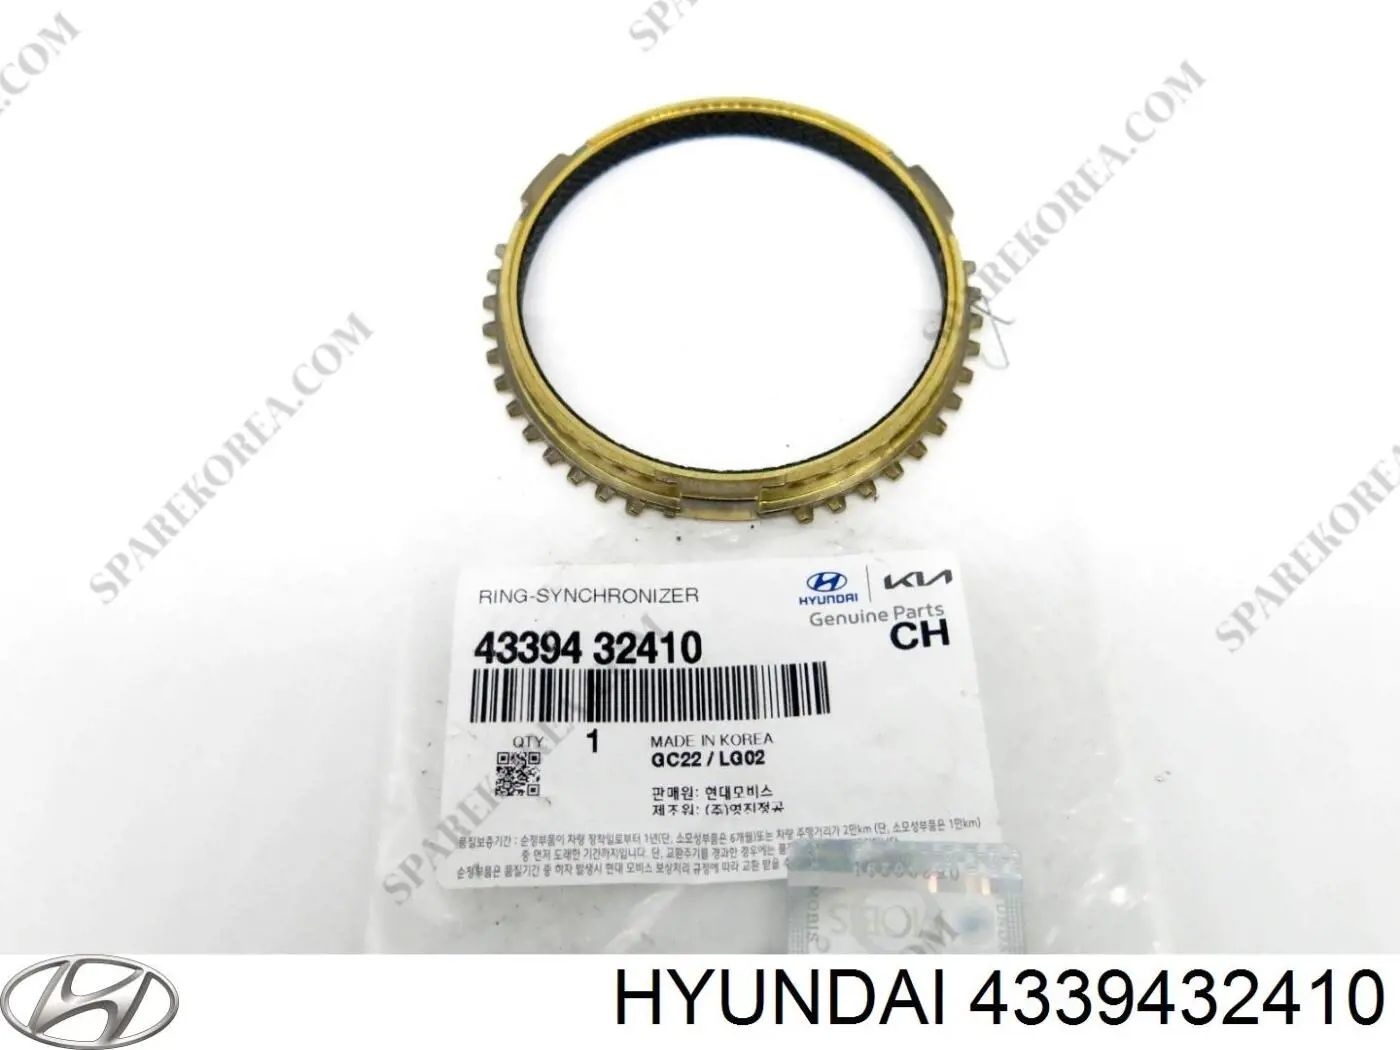 4339432410 Hyundai/Kia anel de sincronizador